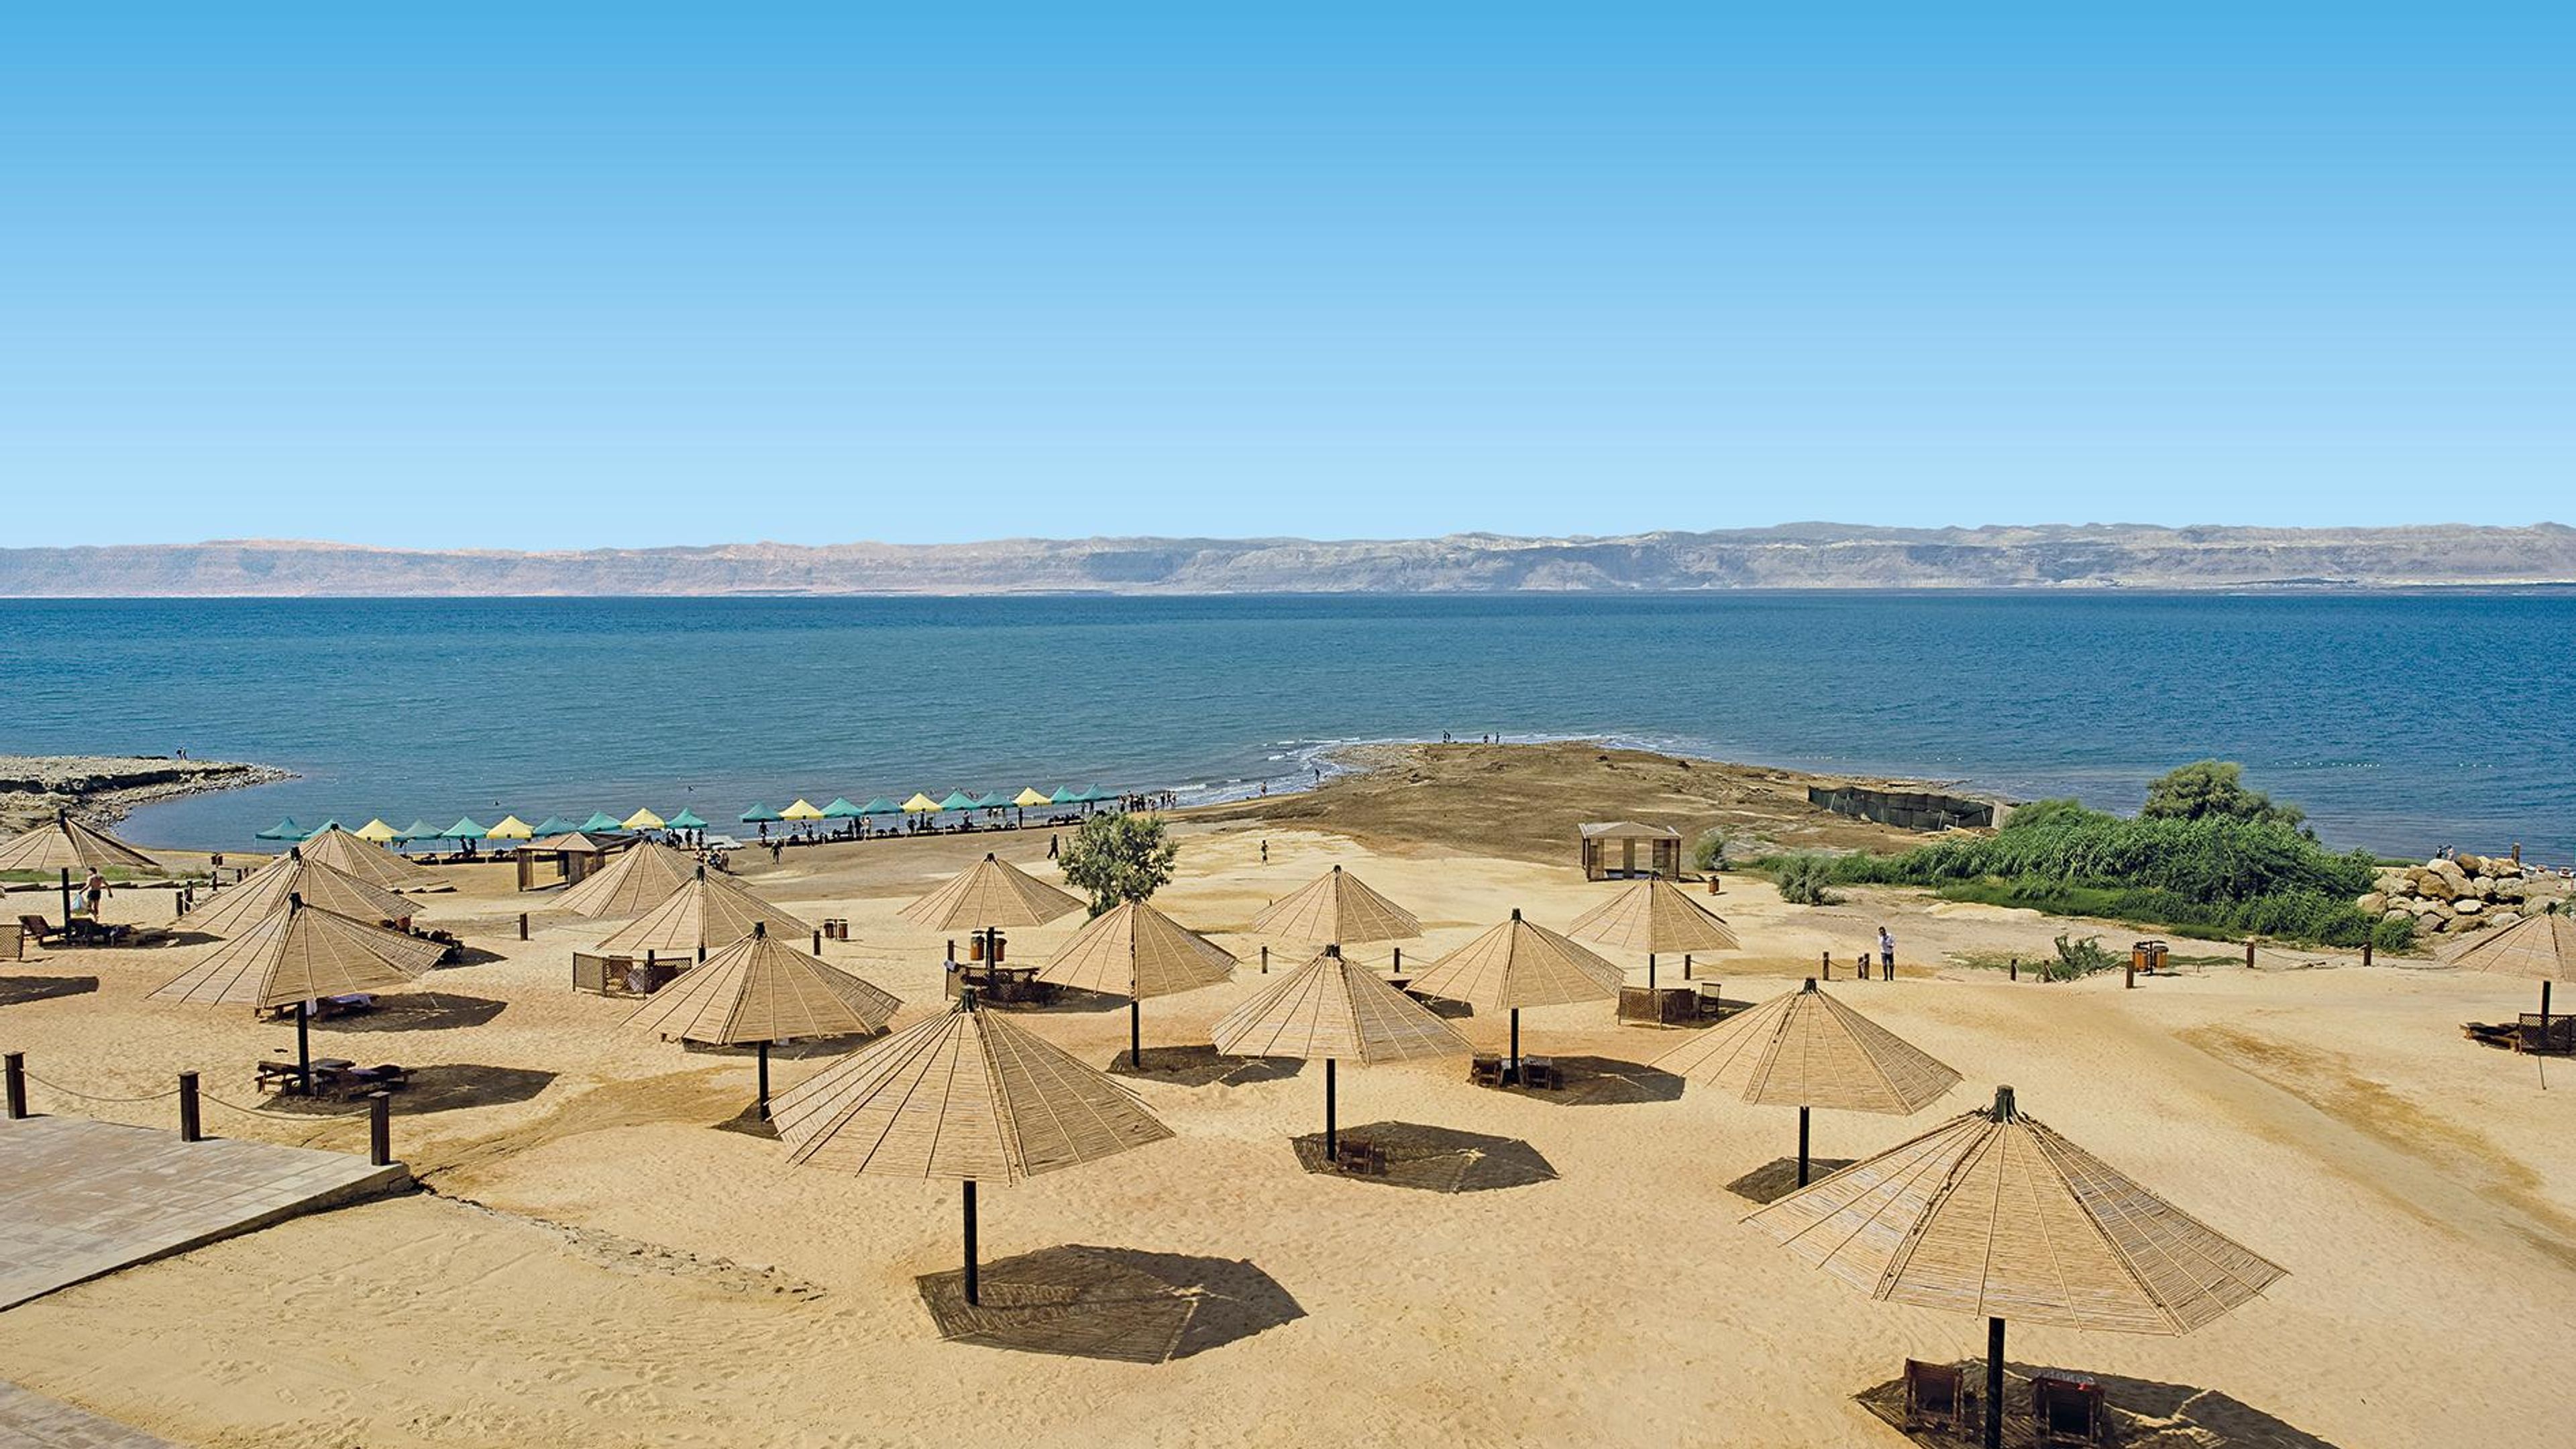 Dead Sea Spa Hotel mit Medical Center